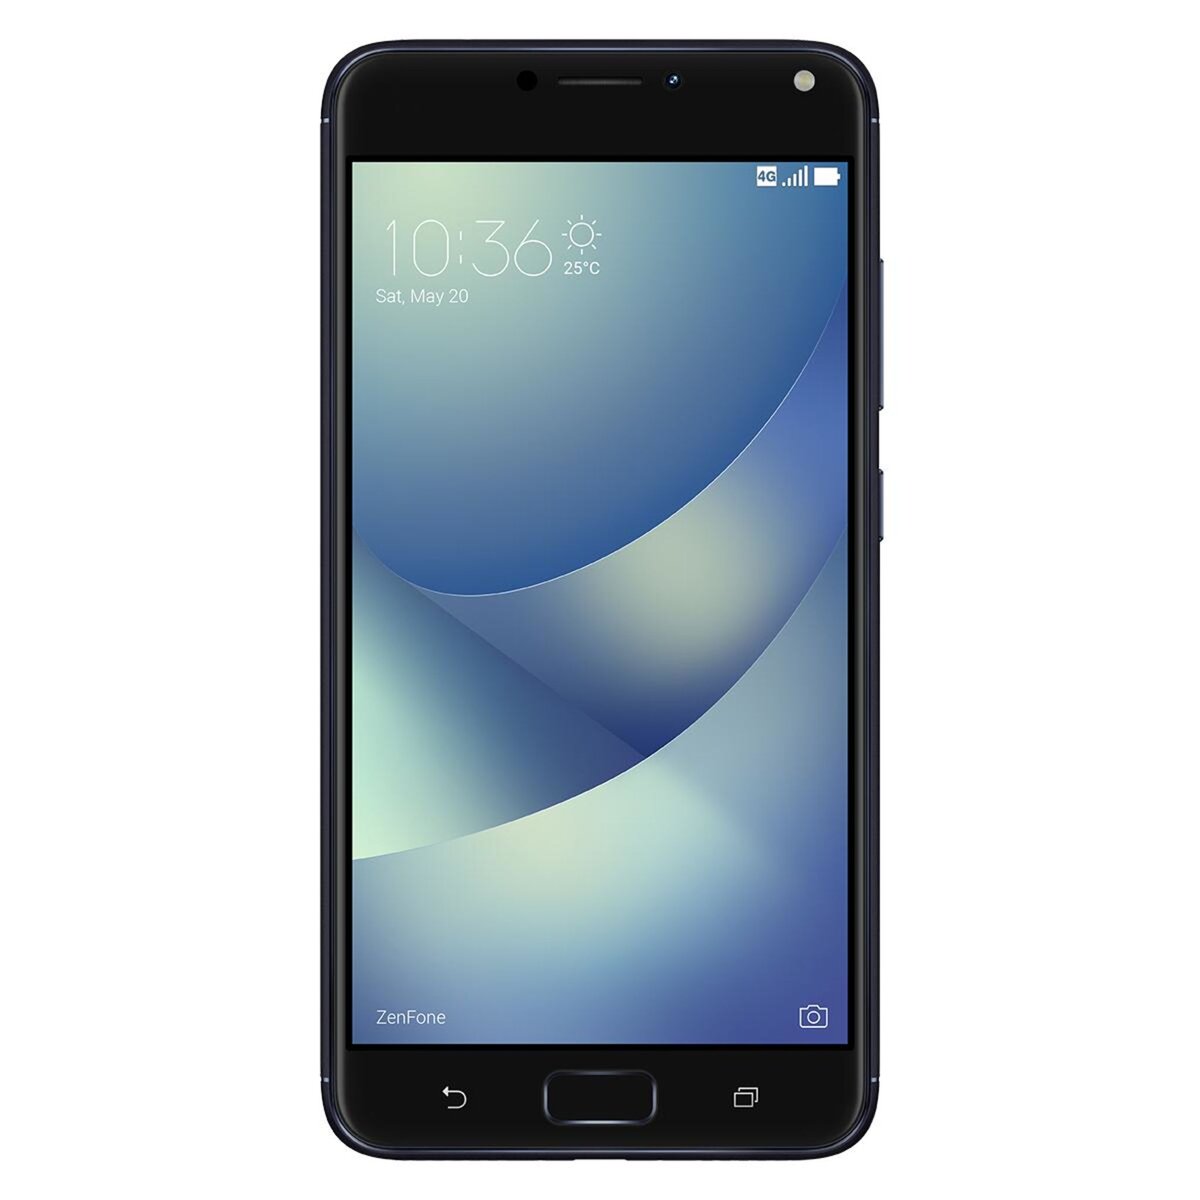 ASUS Smartphone ZENFONE 4 MAX+ - 32 Go - 5,5 pouces - Noir